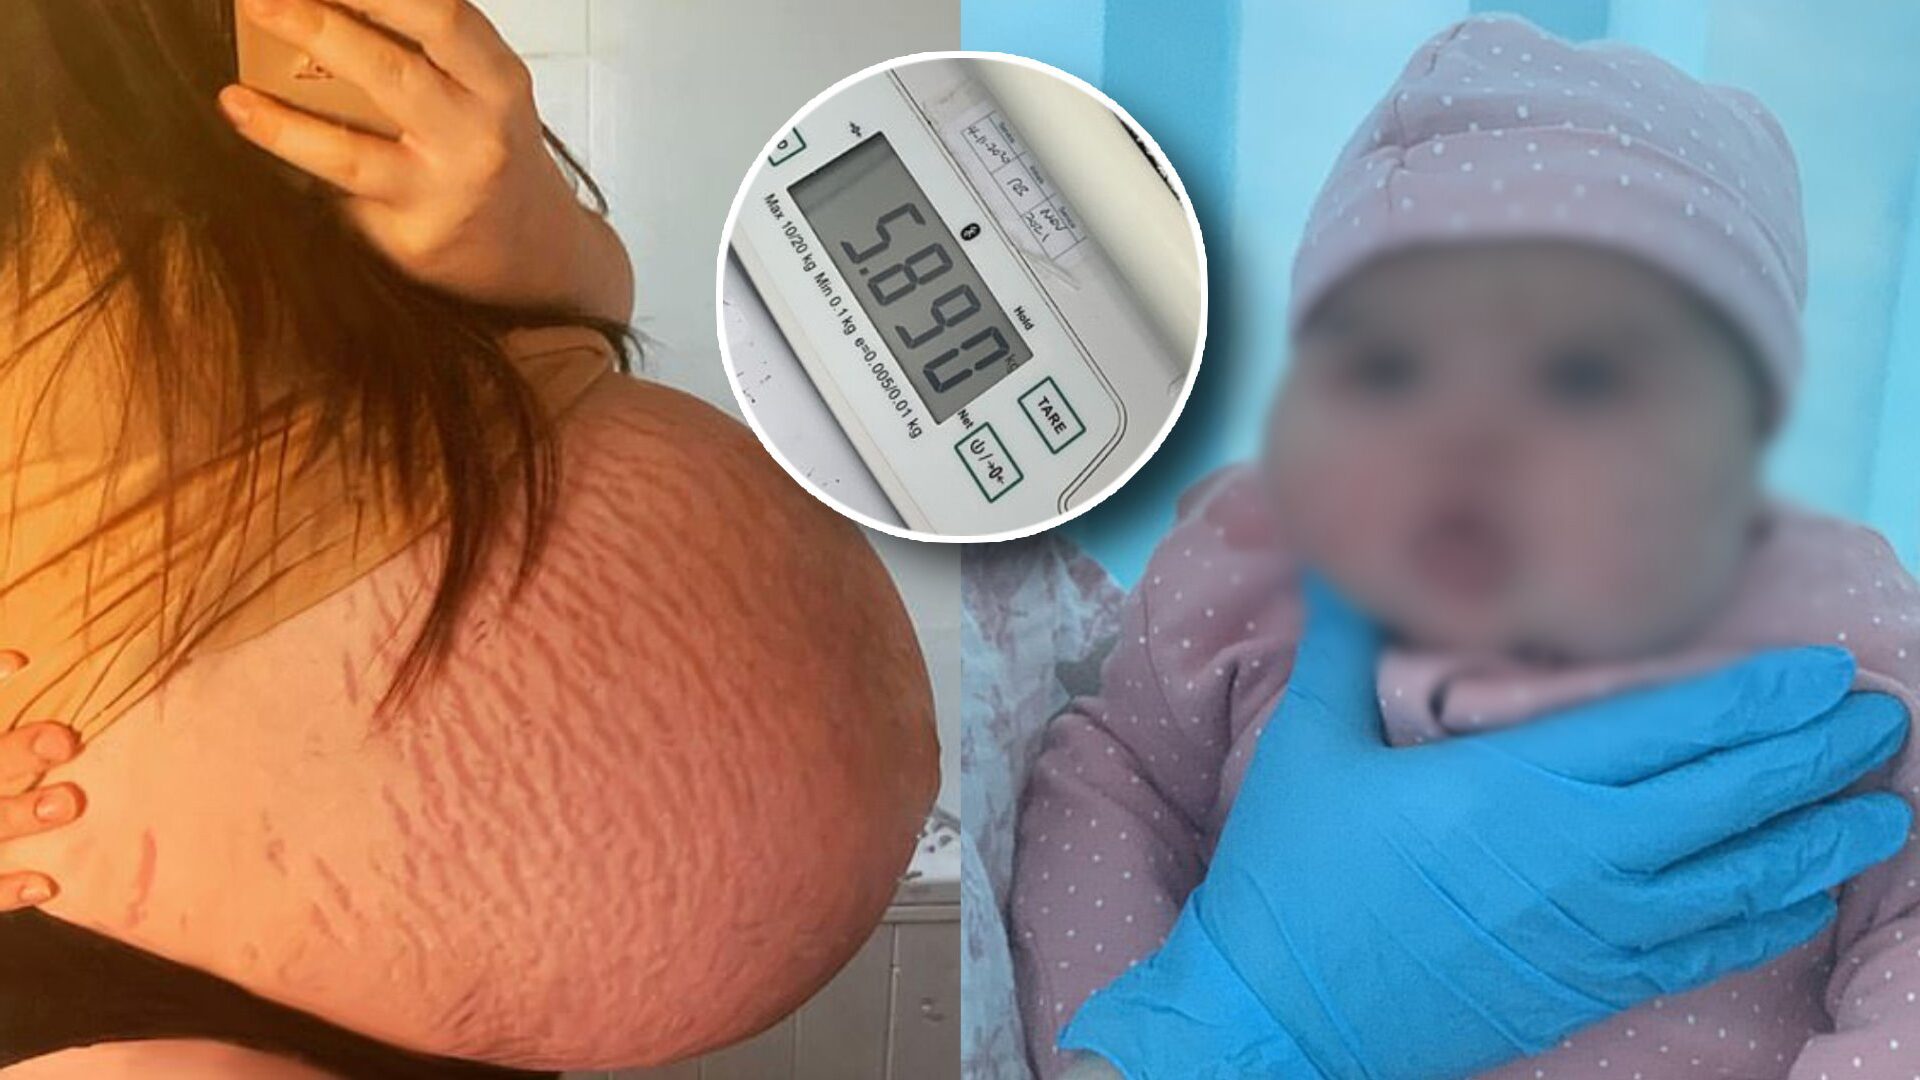 สาวท้องแรก เล่า ท้องใหญ่เกิน จนเจอปัญหาหนัก ก่อนคลอดลูกสาวหนัก 5 กก.กว่า